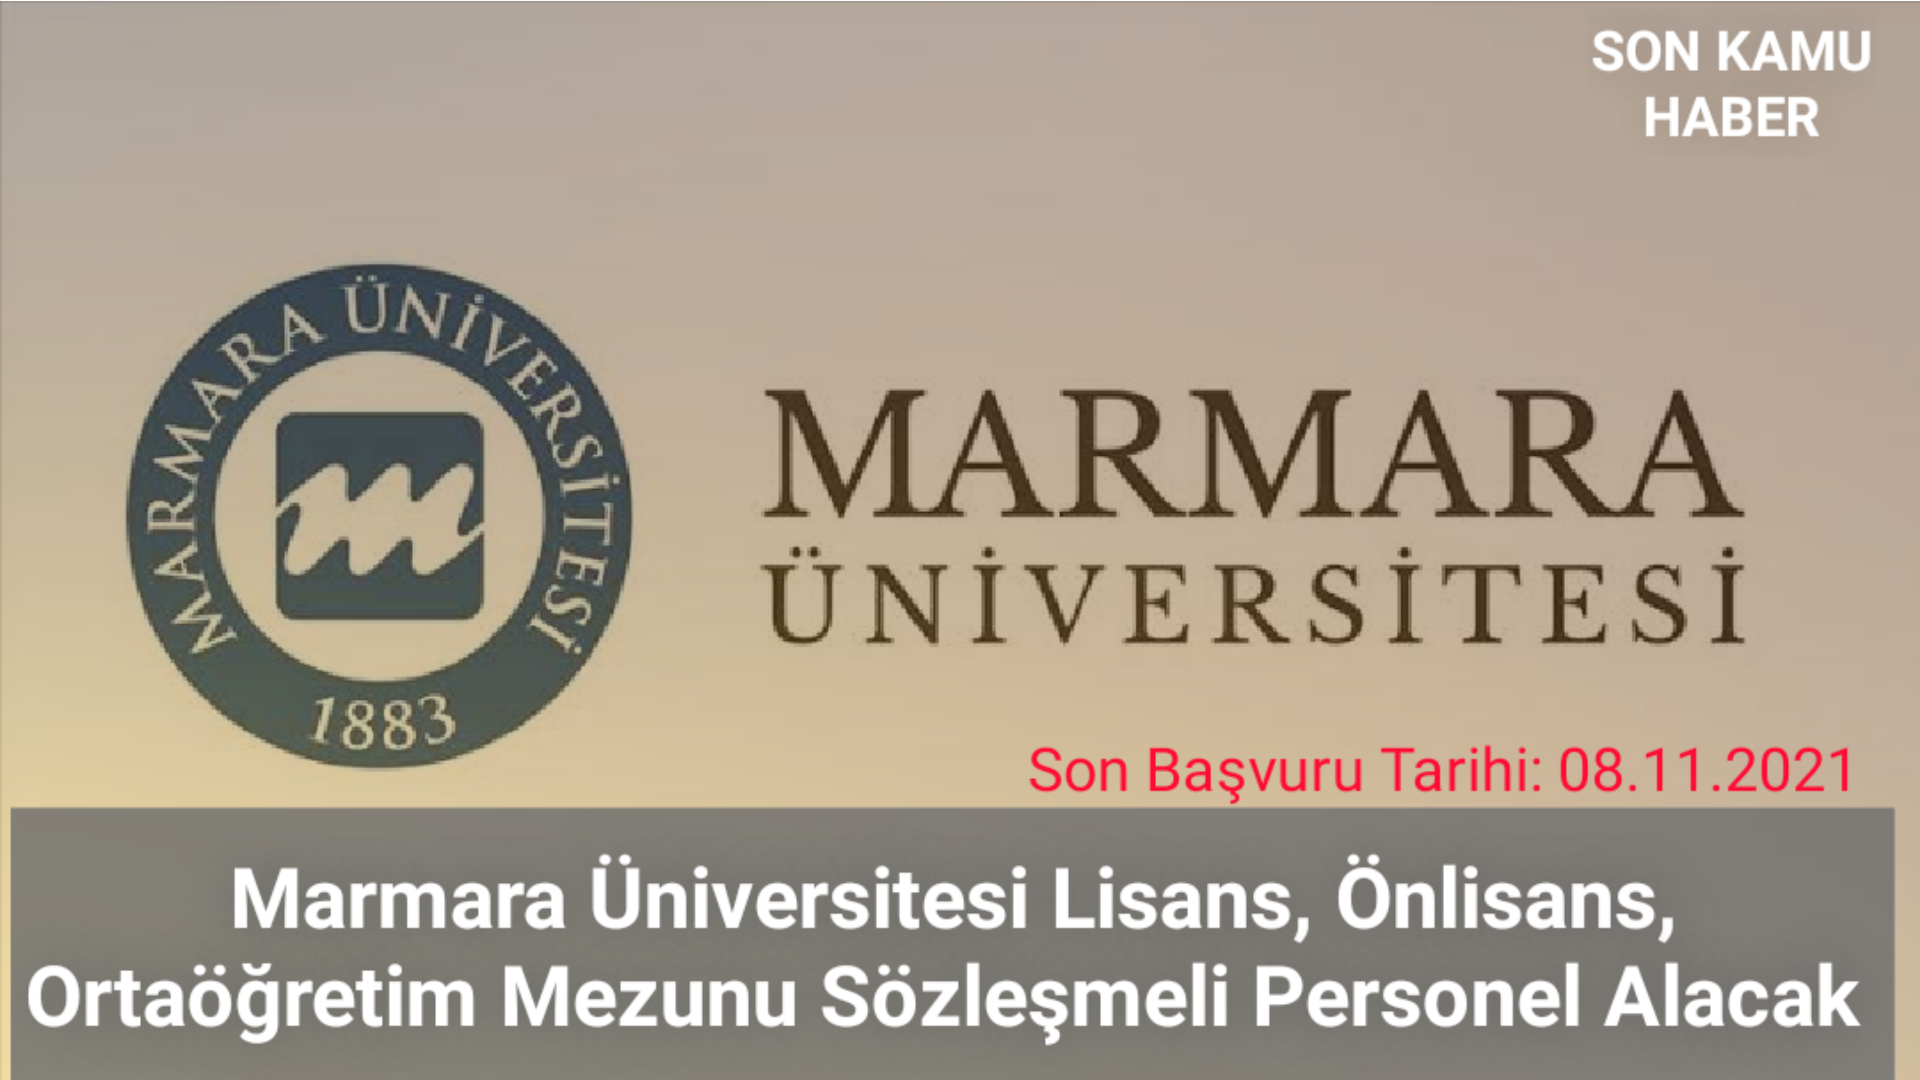 Marmara Üniversitesi Lisans, Önlisans, Ortaöğretim Mezunu Sözleşmeli Personel Alacak 2021